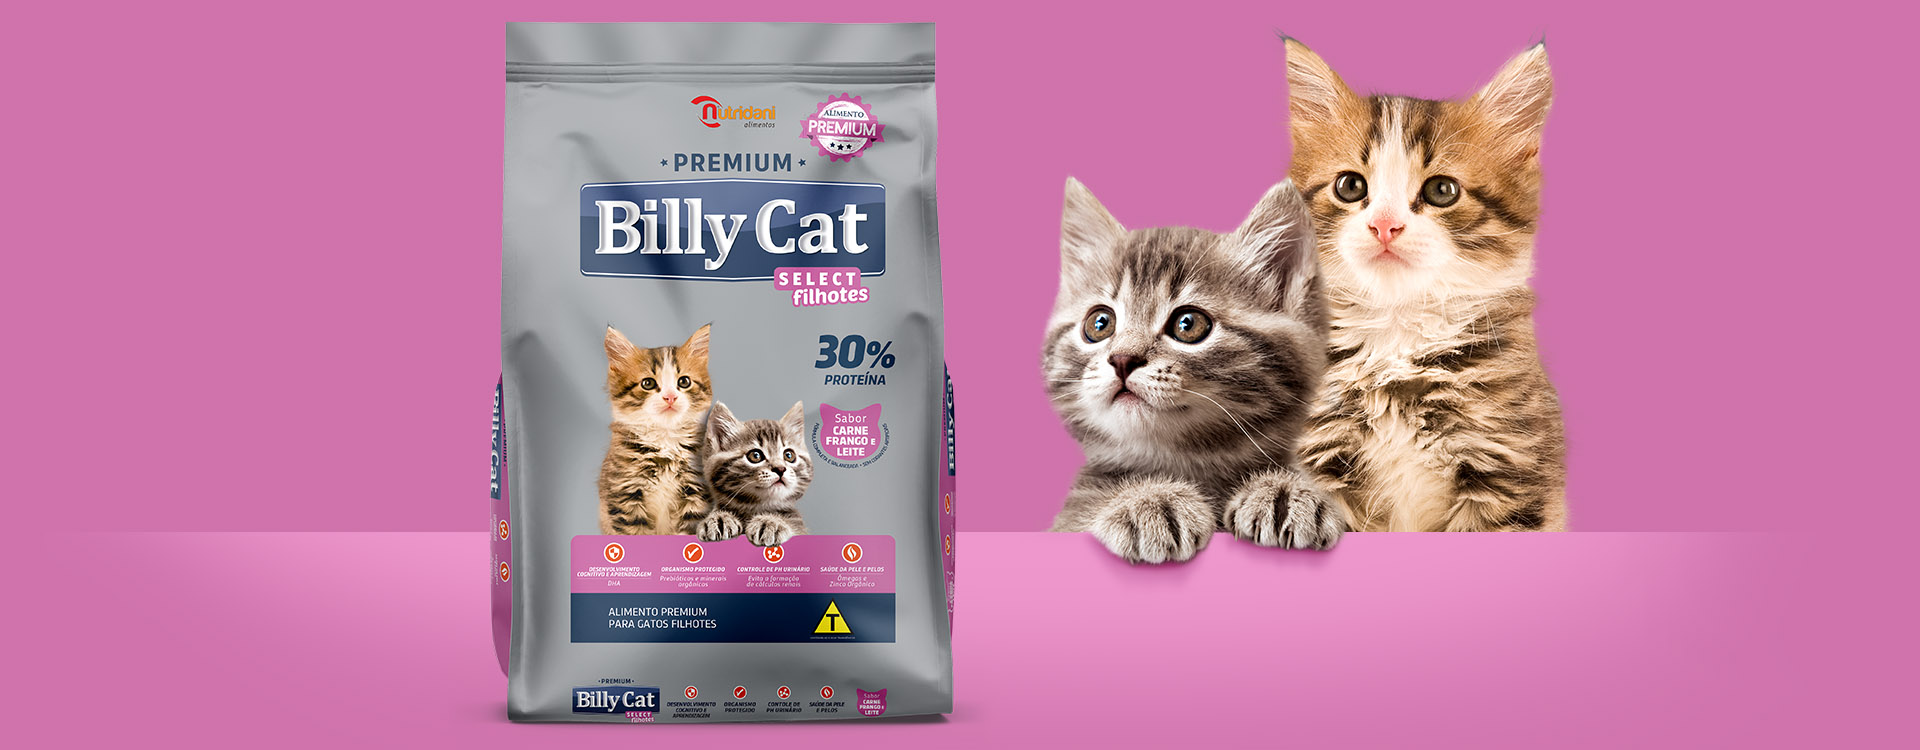 criação_embalagens_para_gatos_billy_cat